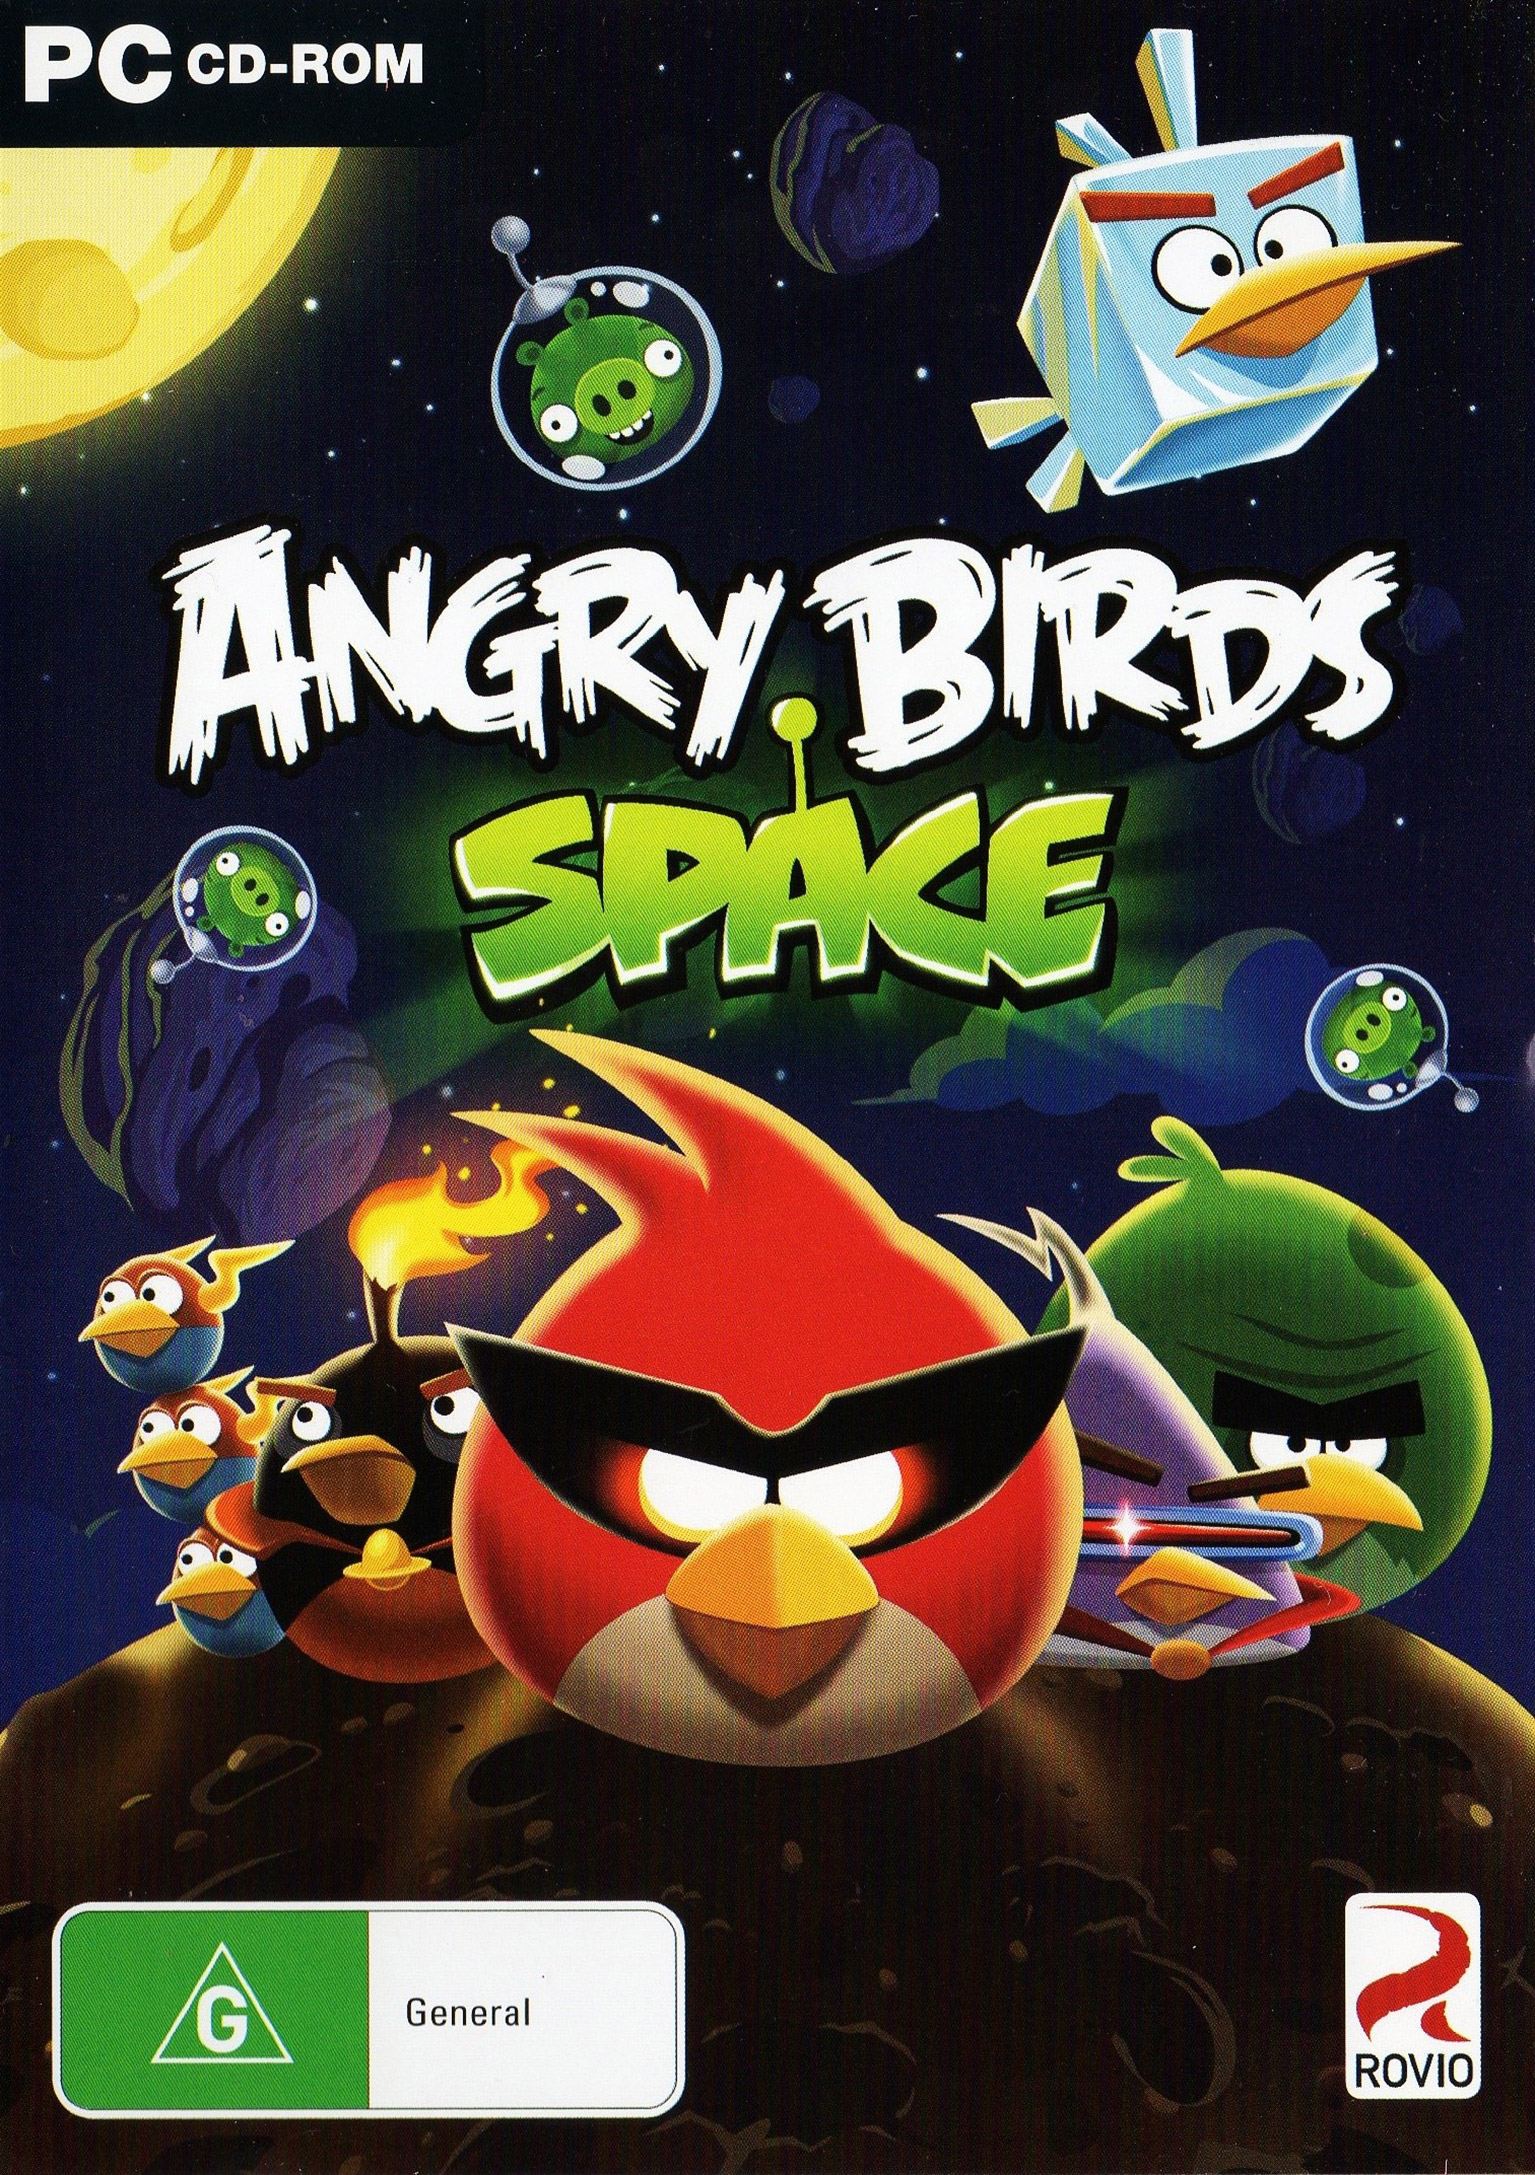 Игра енгрибердс. Angry Birds Space игра. Angry Birds Space Premium. Angry Birds Space 2012. Angry Birds 2 игра.